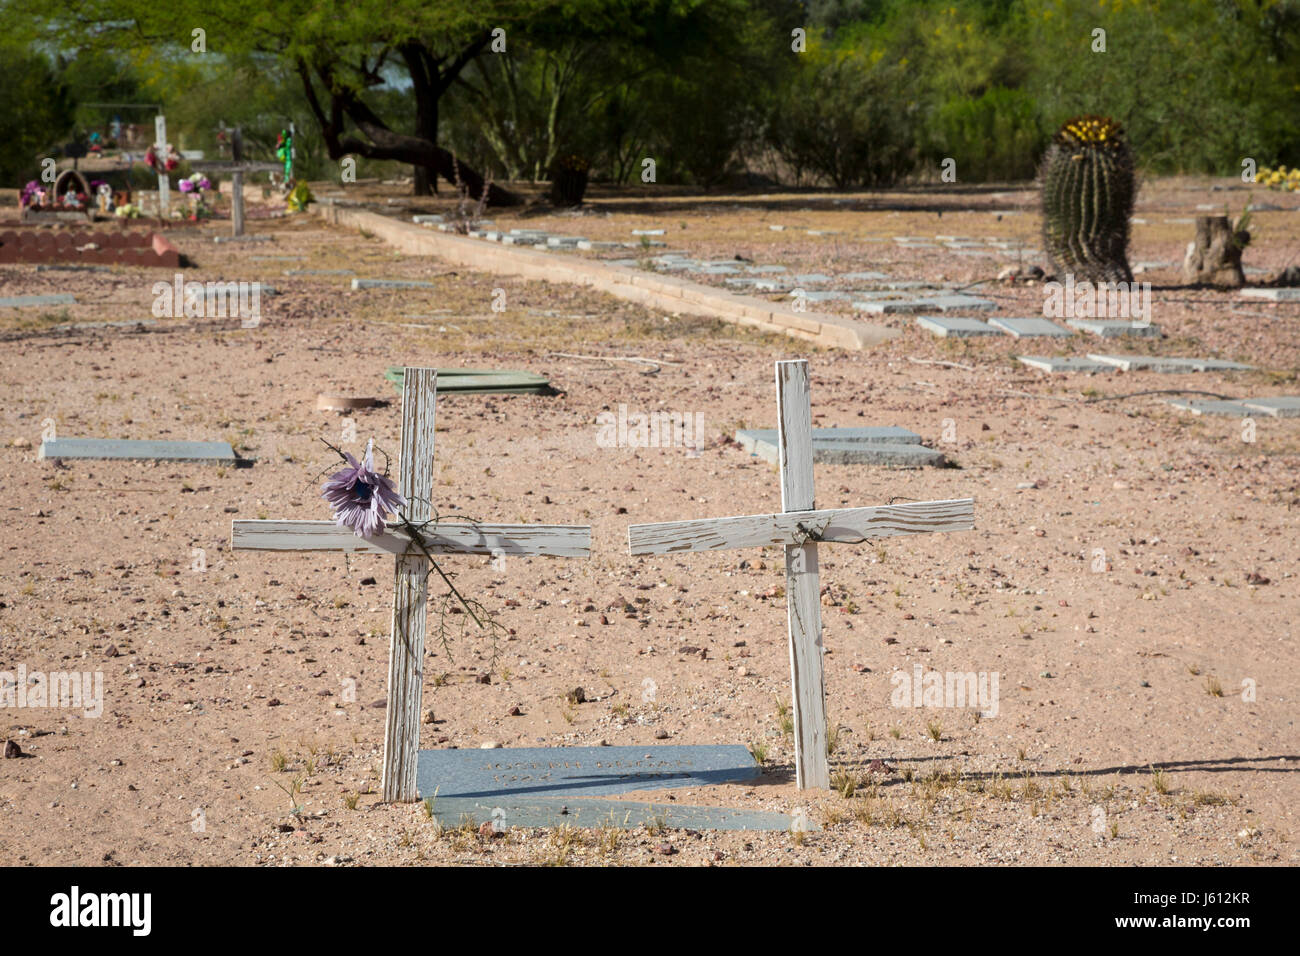 Tucson, Arizona - El cementerio del Condado Pima, donde los indigentes, las personas sin hogar, y no identificados han sido enterrados, incluidos los migrantes que murieron cruzando Foto de stock